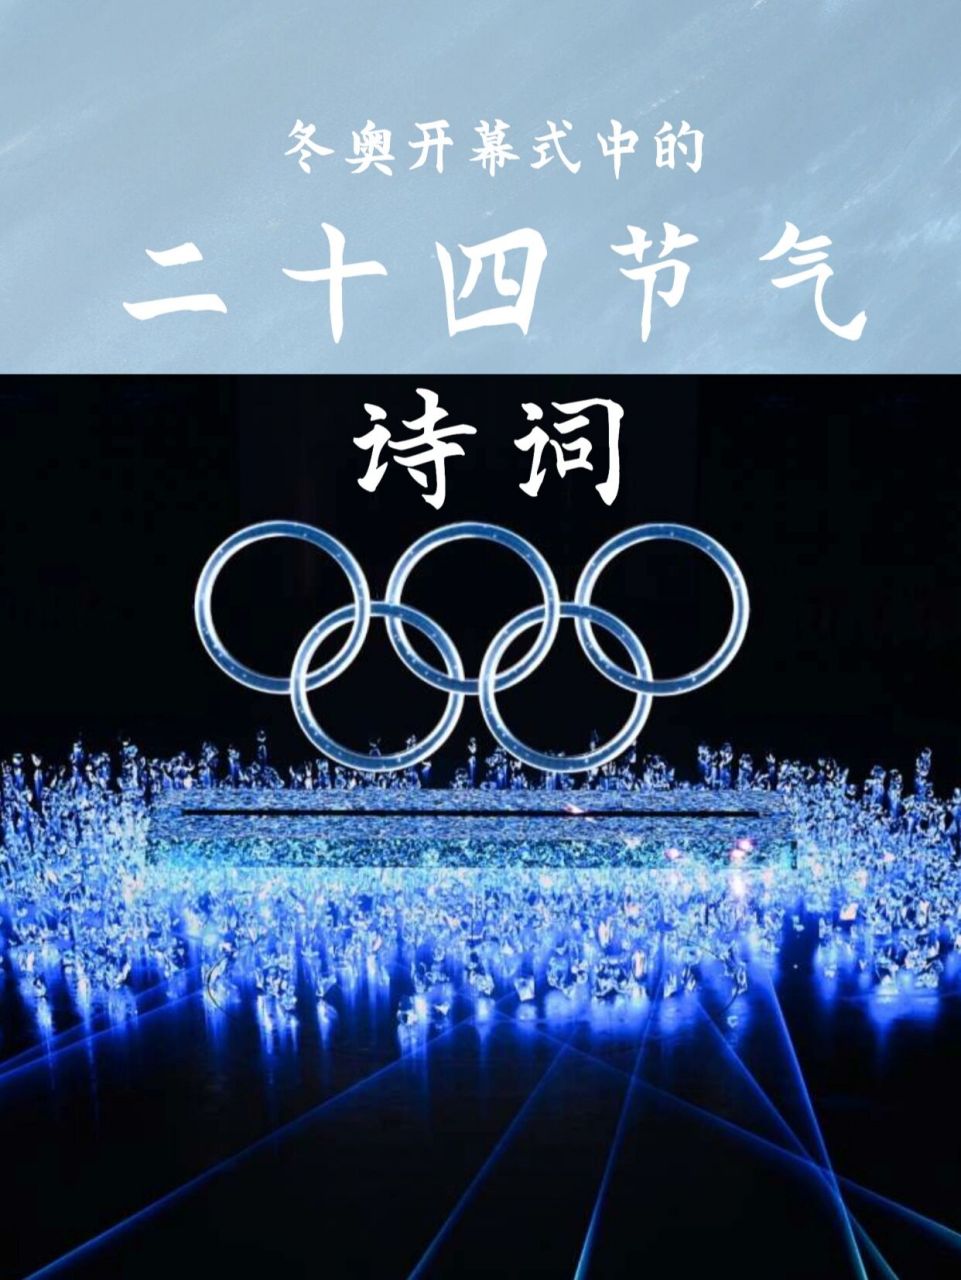 北京冬奥开幕24节气图片